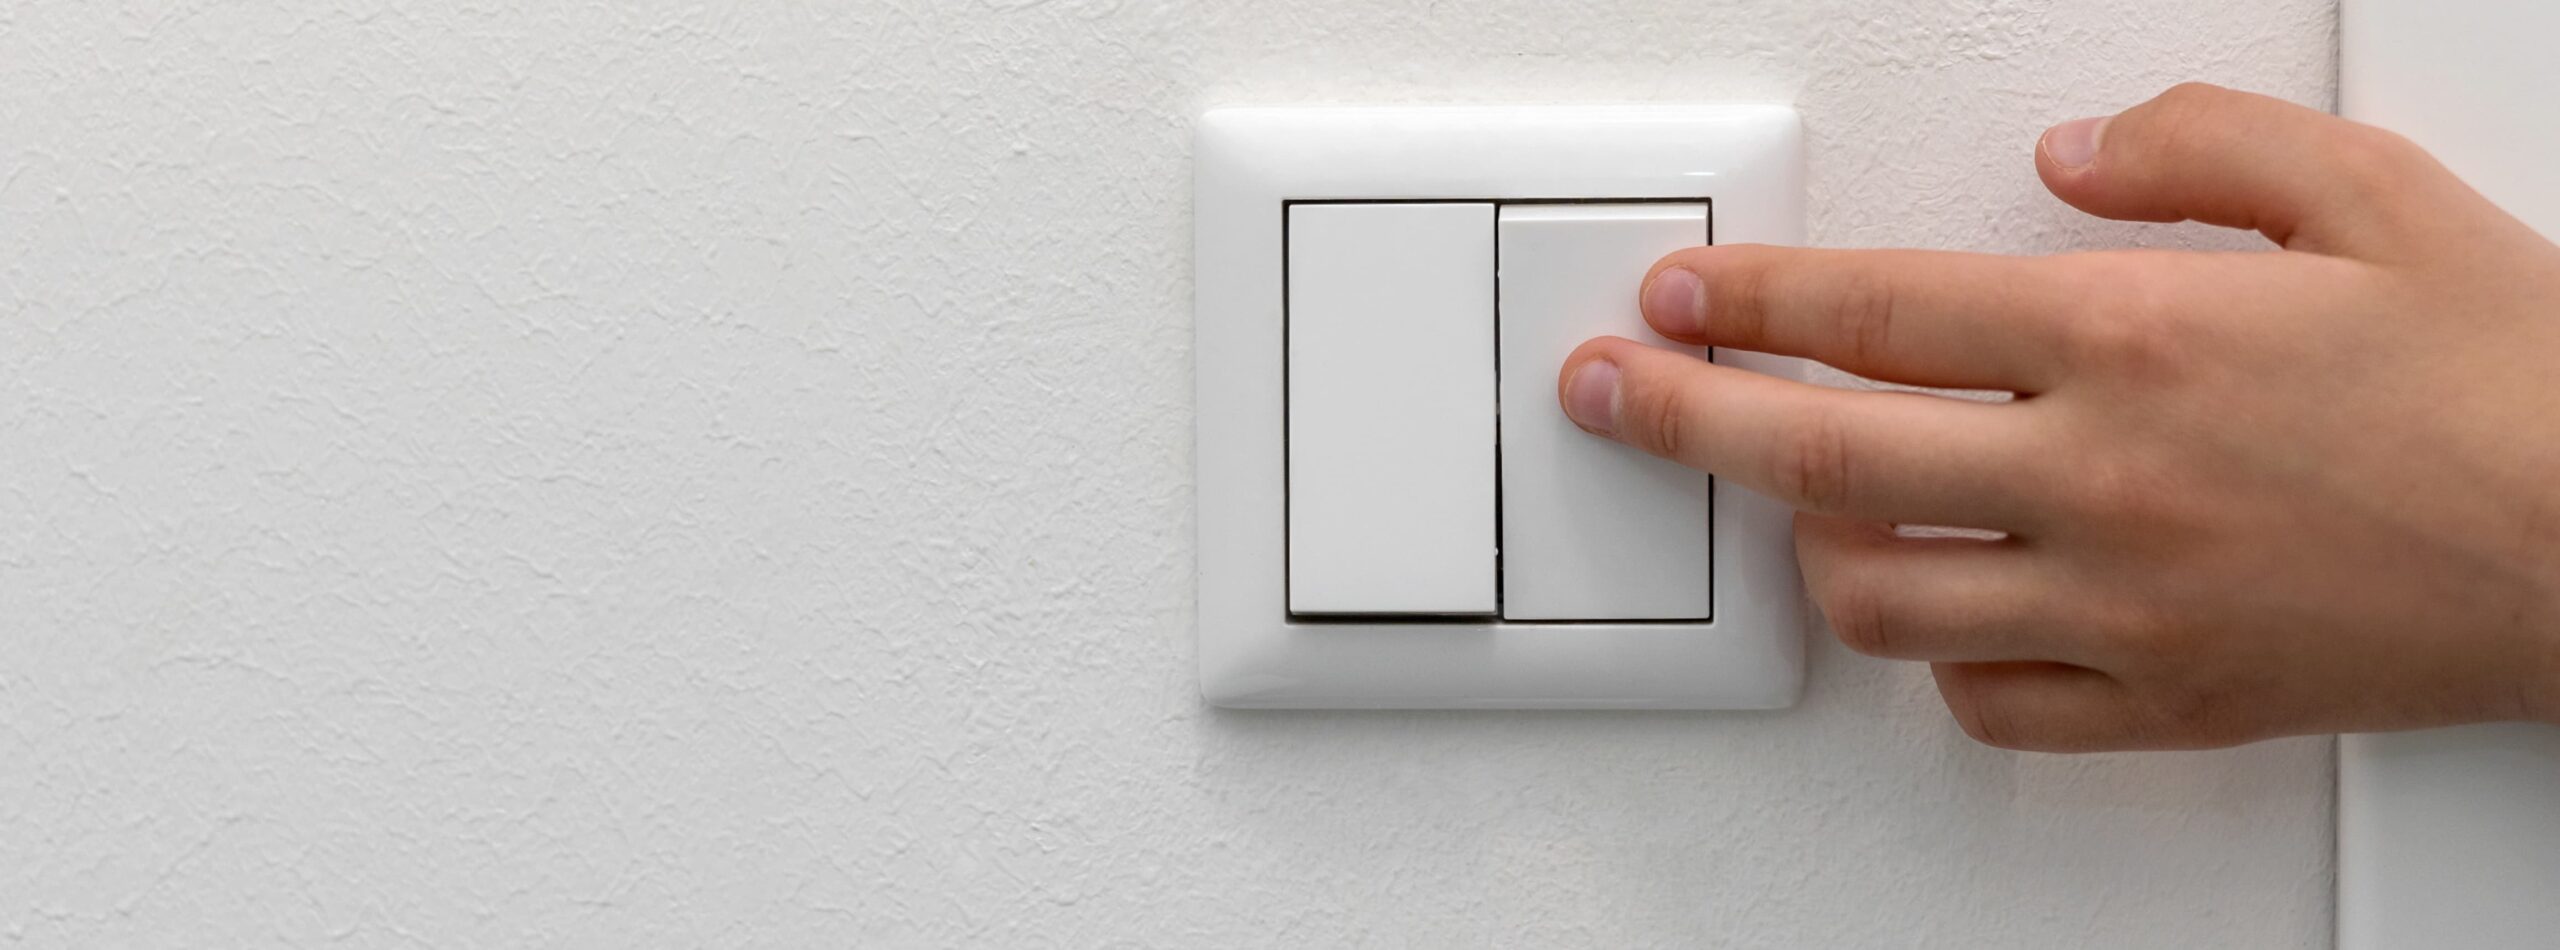 Como escolher o melhor interruptor para a sua casa